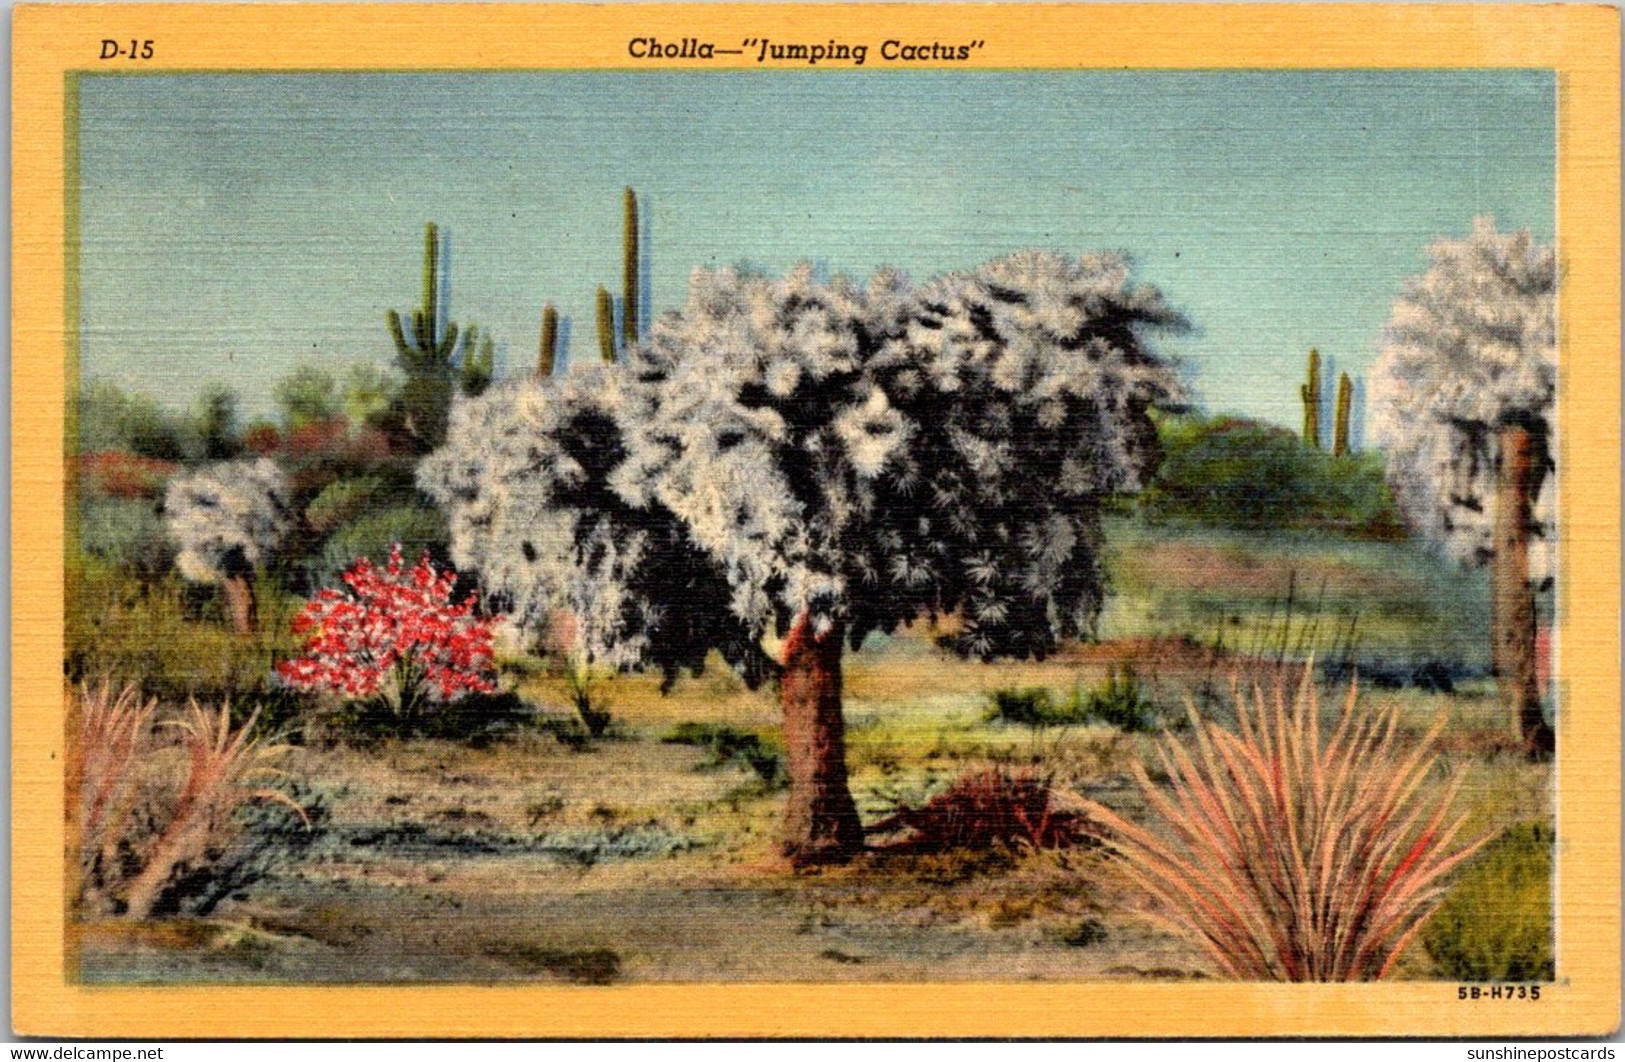 Cactus Cholla Cactus "Jumping Cactus" Curteich - Sukkulenten